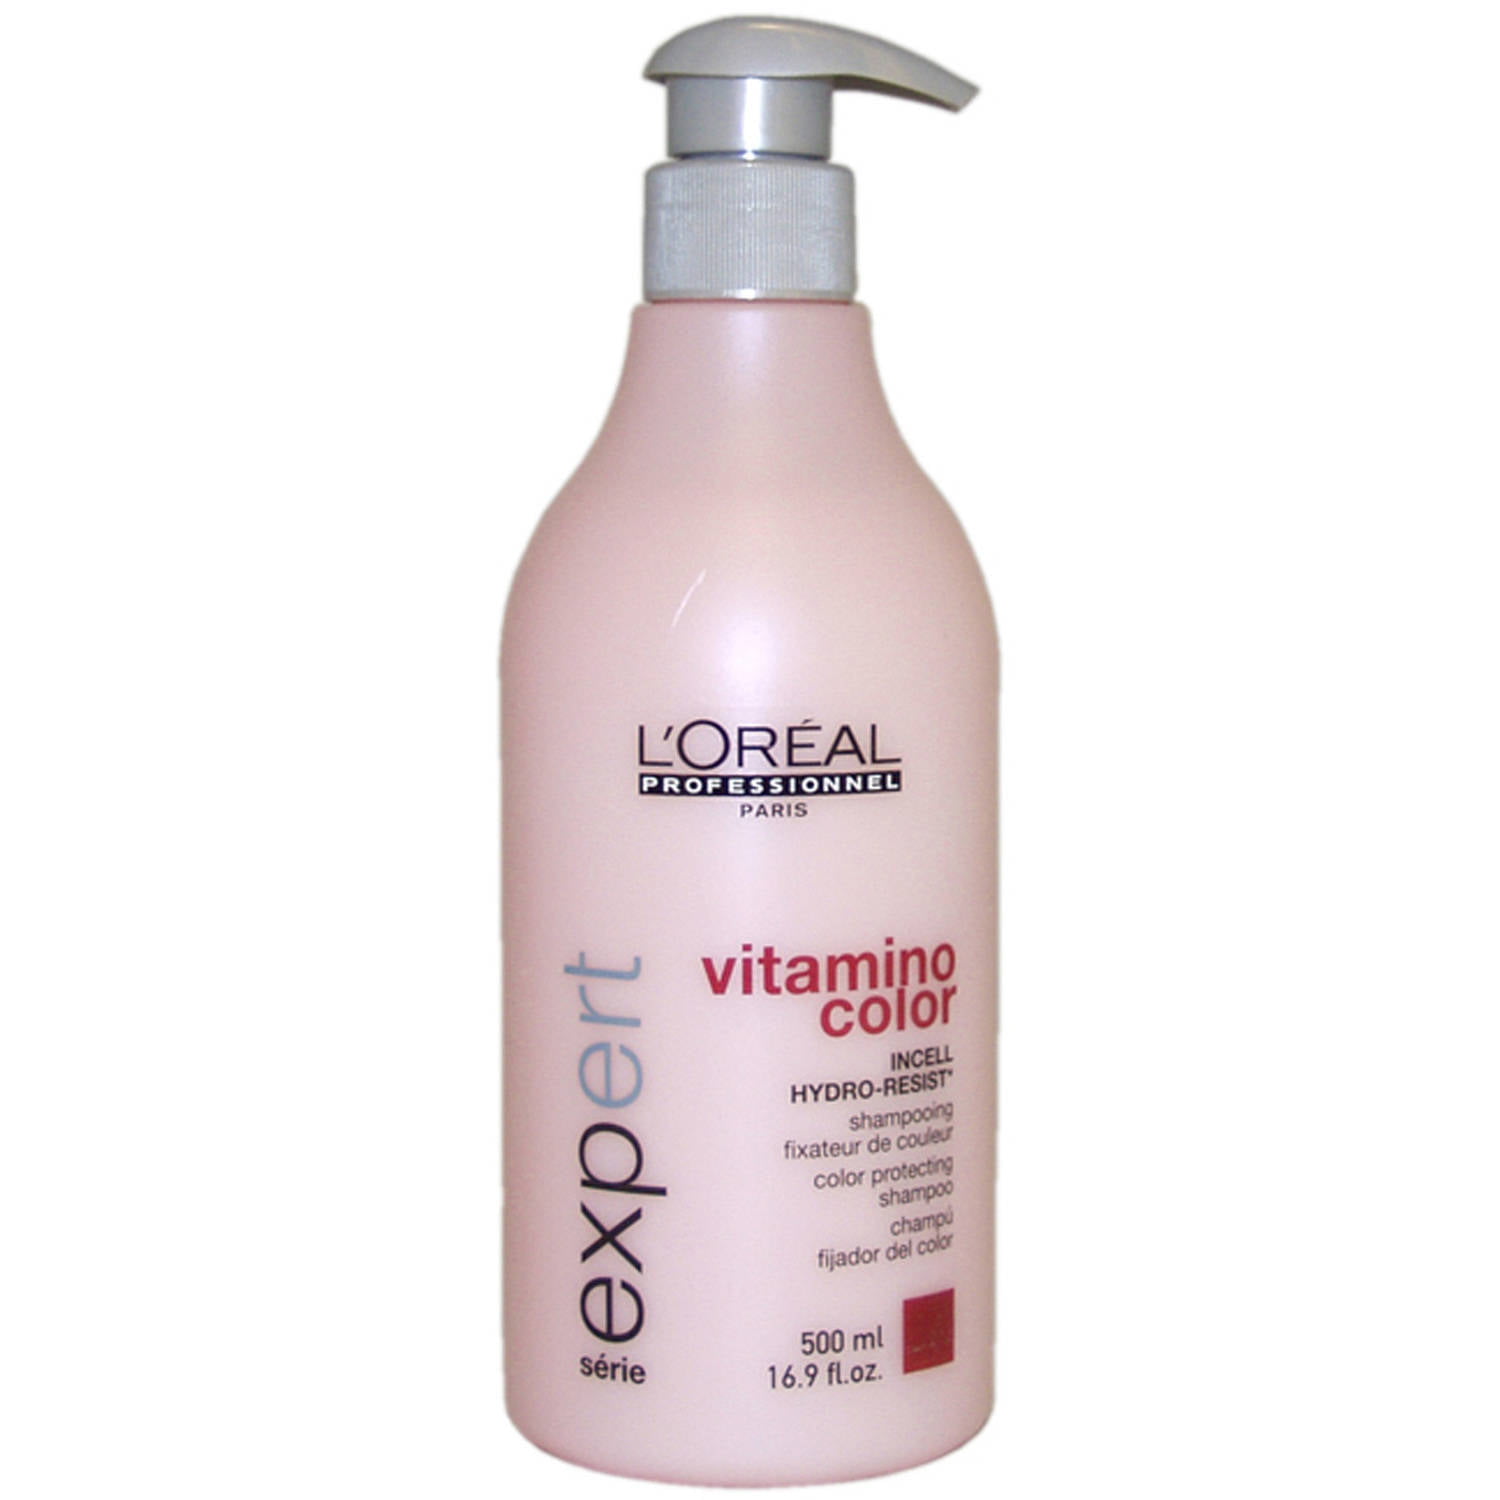 L'Oreal Professionnel - Vitamino Color Shampoo by L'Oreal Professional